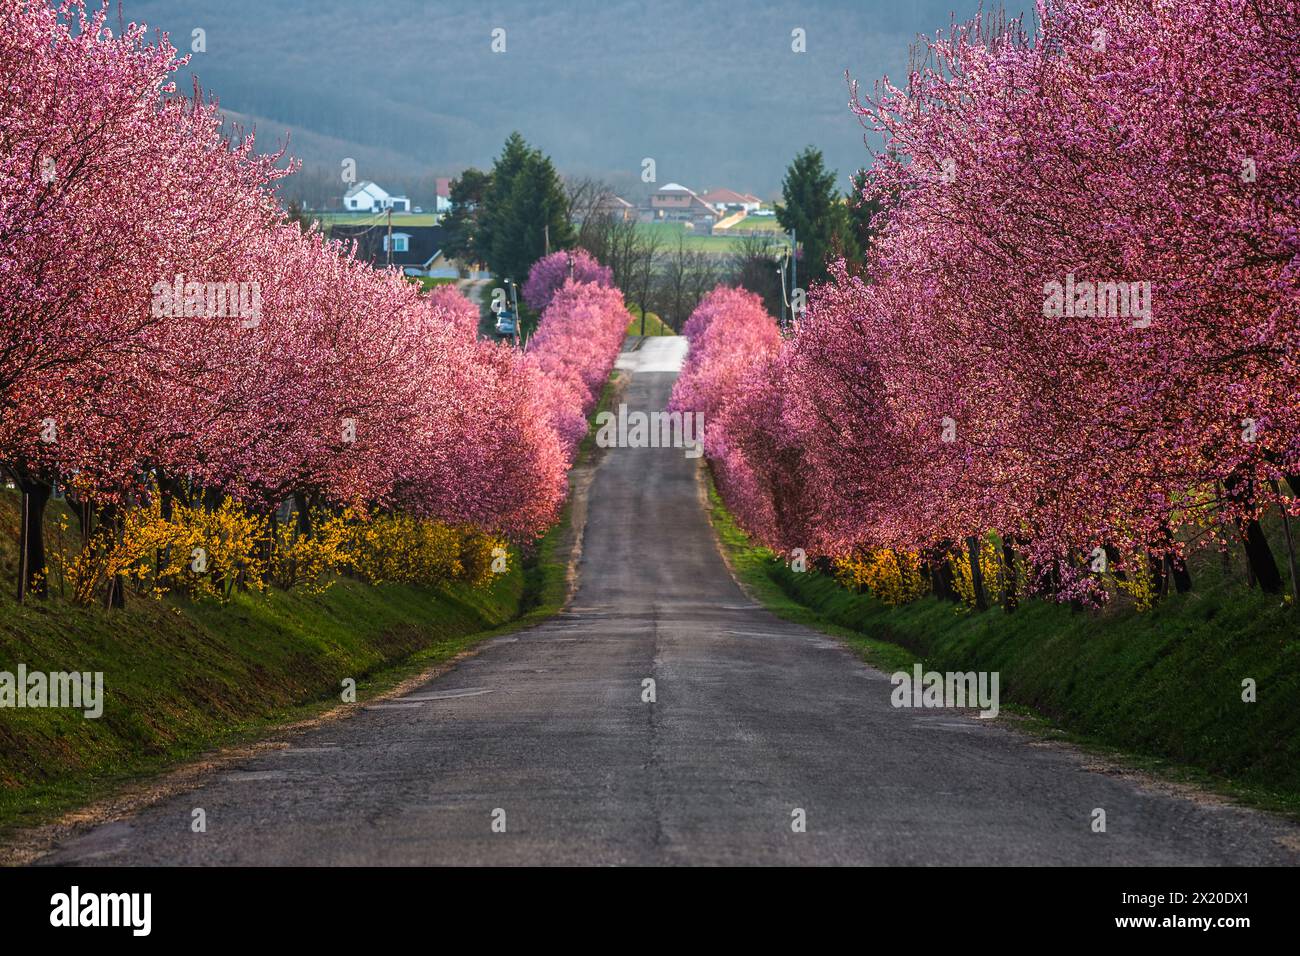 Berkenye, Hongrie - floraison de pruniers sauvages roses le long de la route dans le village de Berkenye par un après-midi de printemps ensoleillé avec la lumière chaude du soleil Banque D'Images